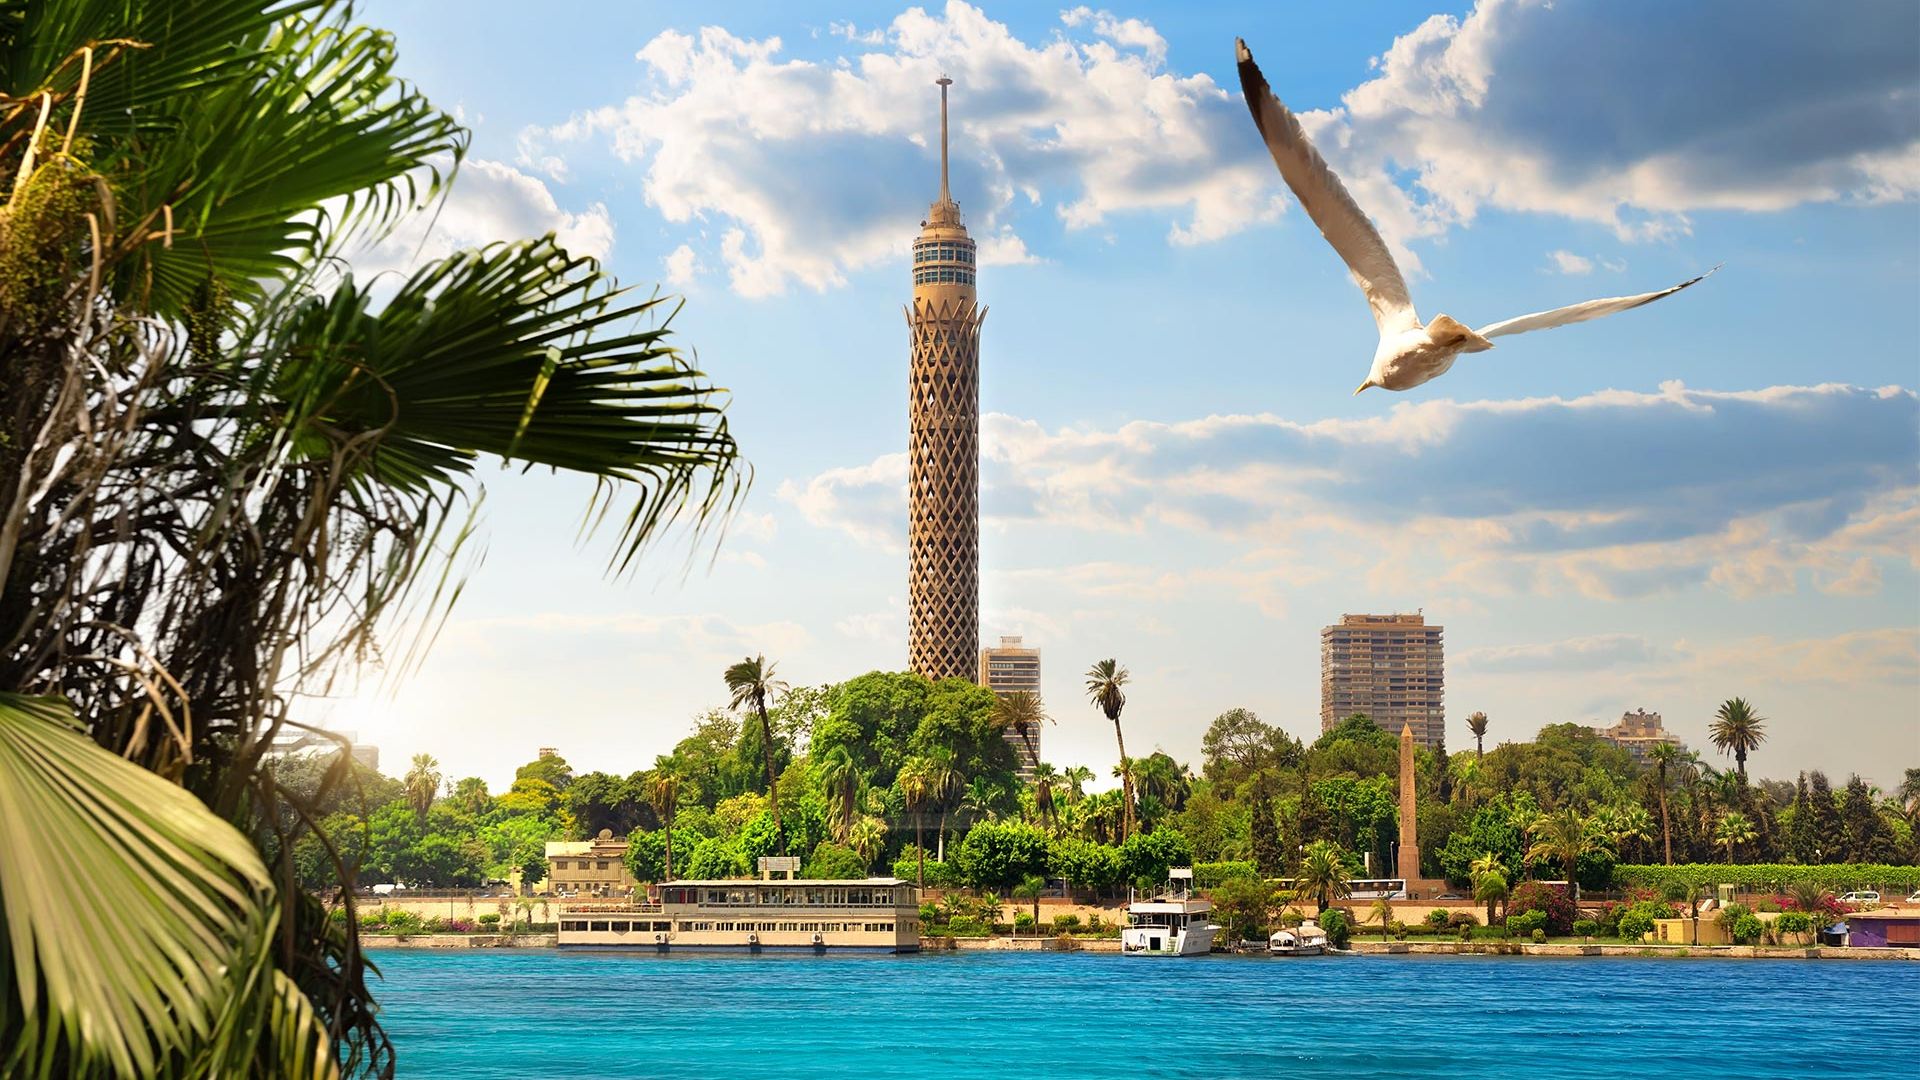 Circuit de grup - Discover Cairo & Croaziera pe Nil, 11 zile - 26 februarie 2022